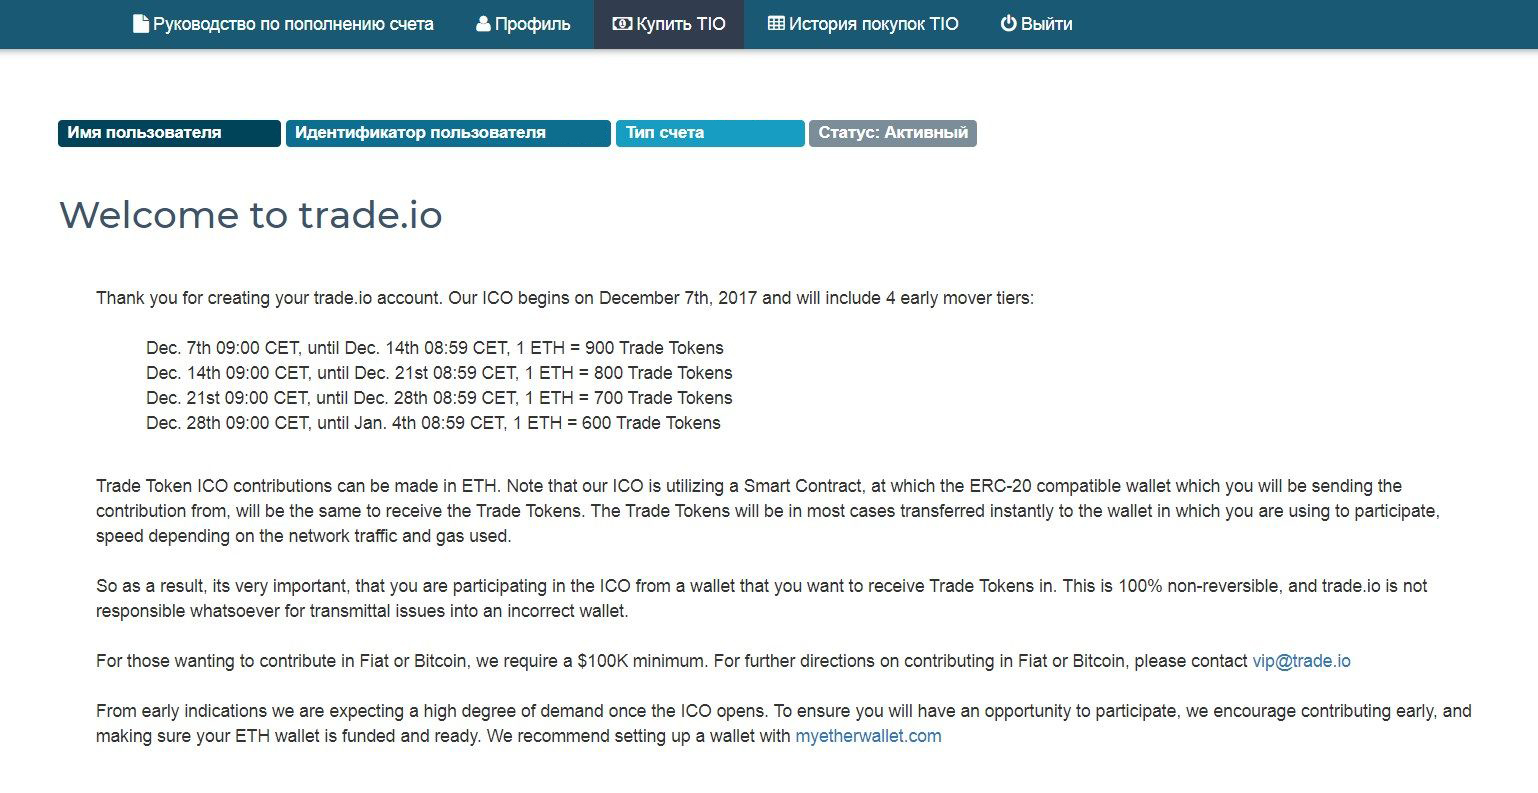 Как принять участие в ICO Trade.io? Шаг 3. Изучите возможности личного кабинета